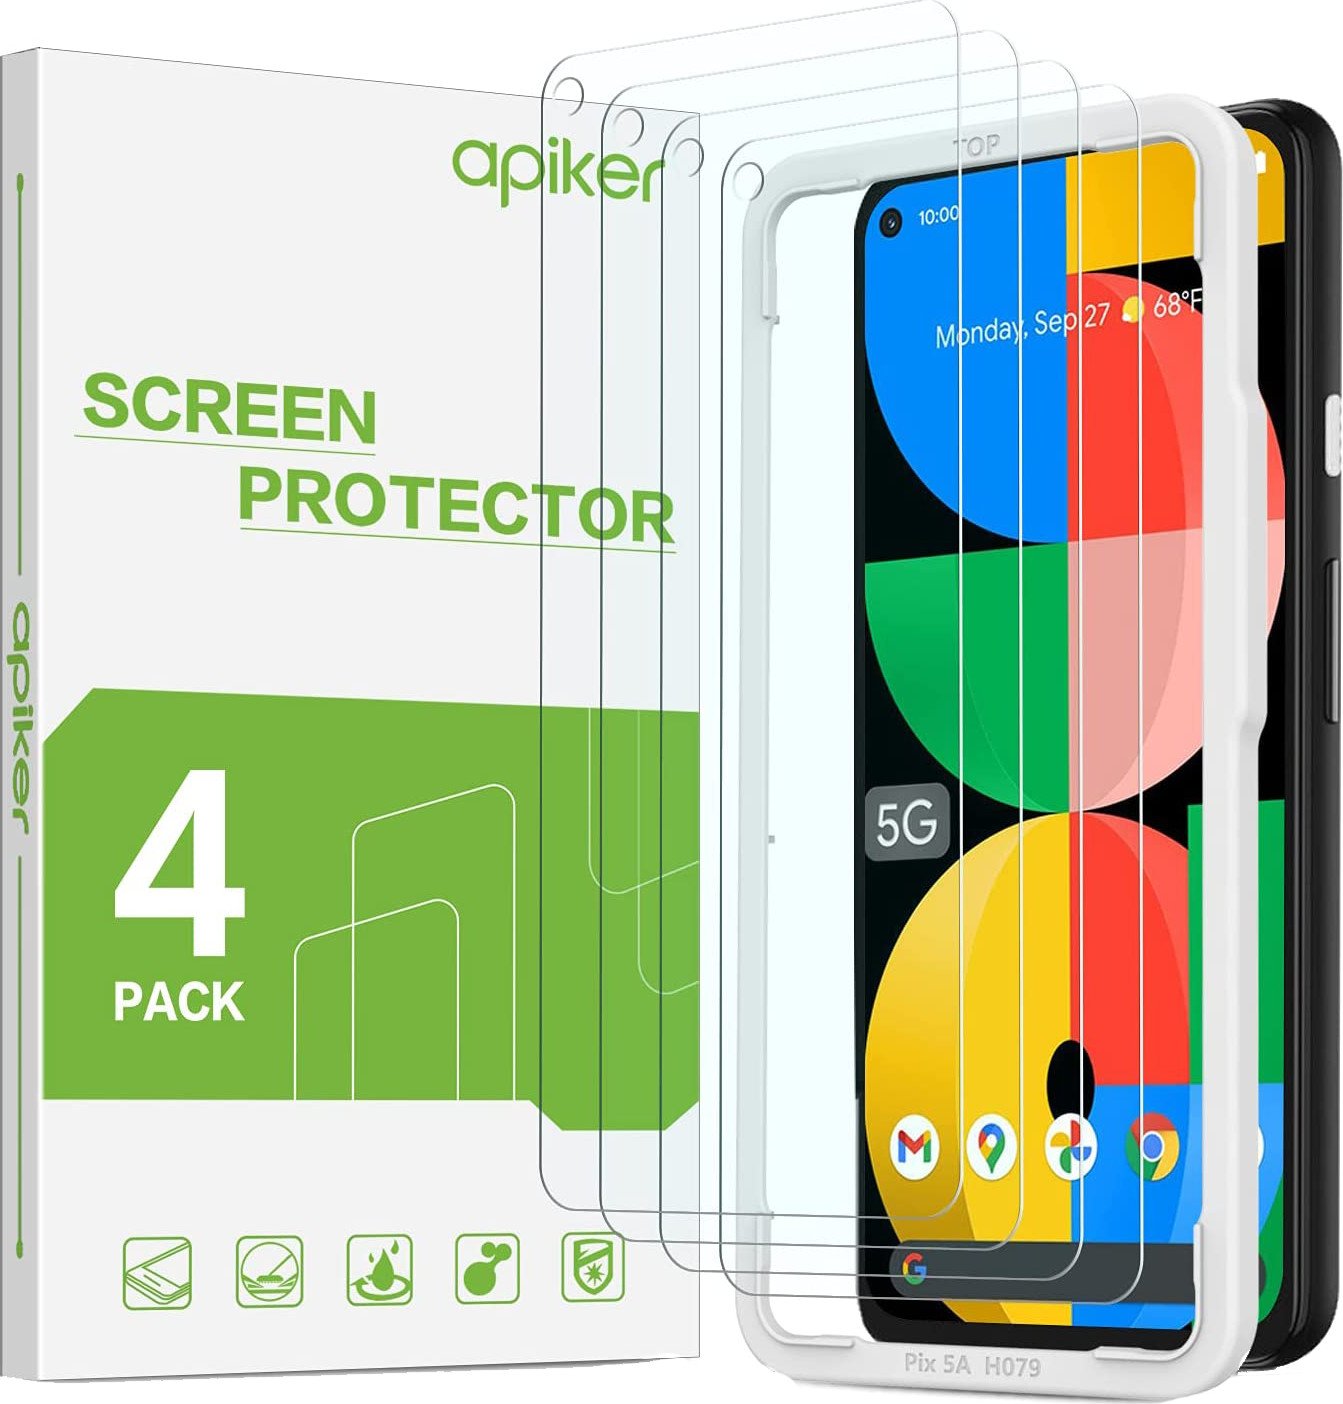 Apiker Pixel 5a Screen Protectors Render